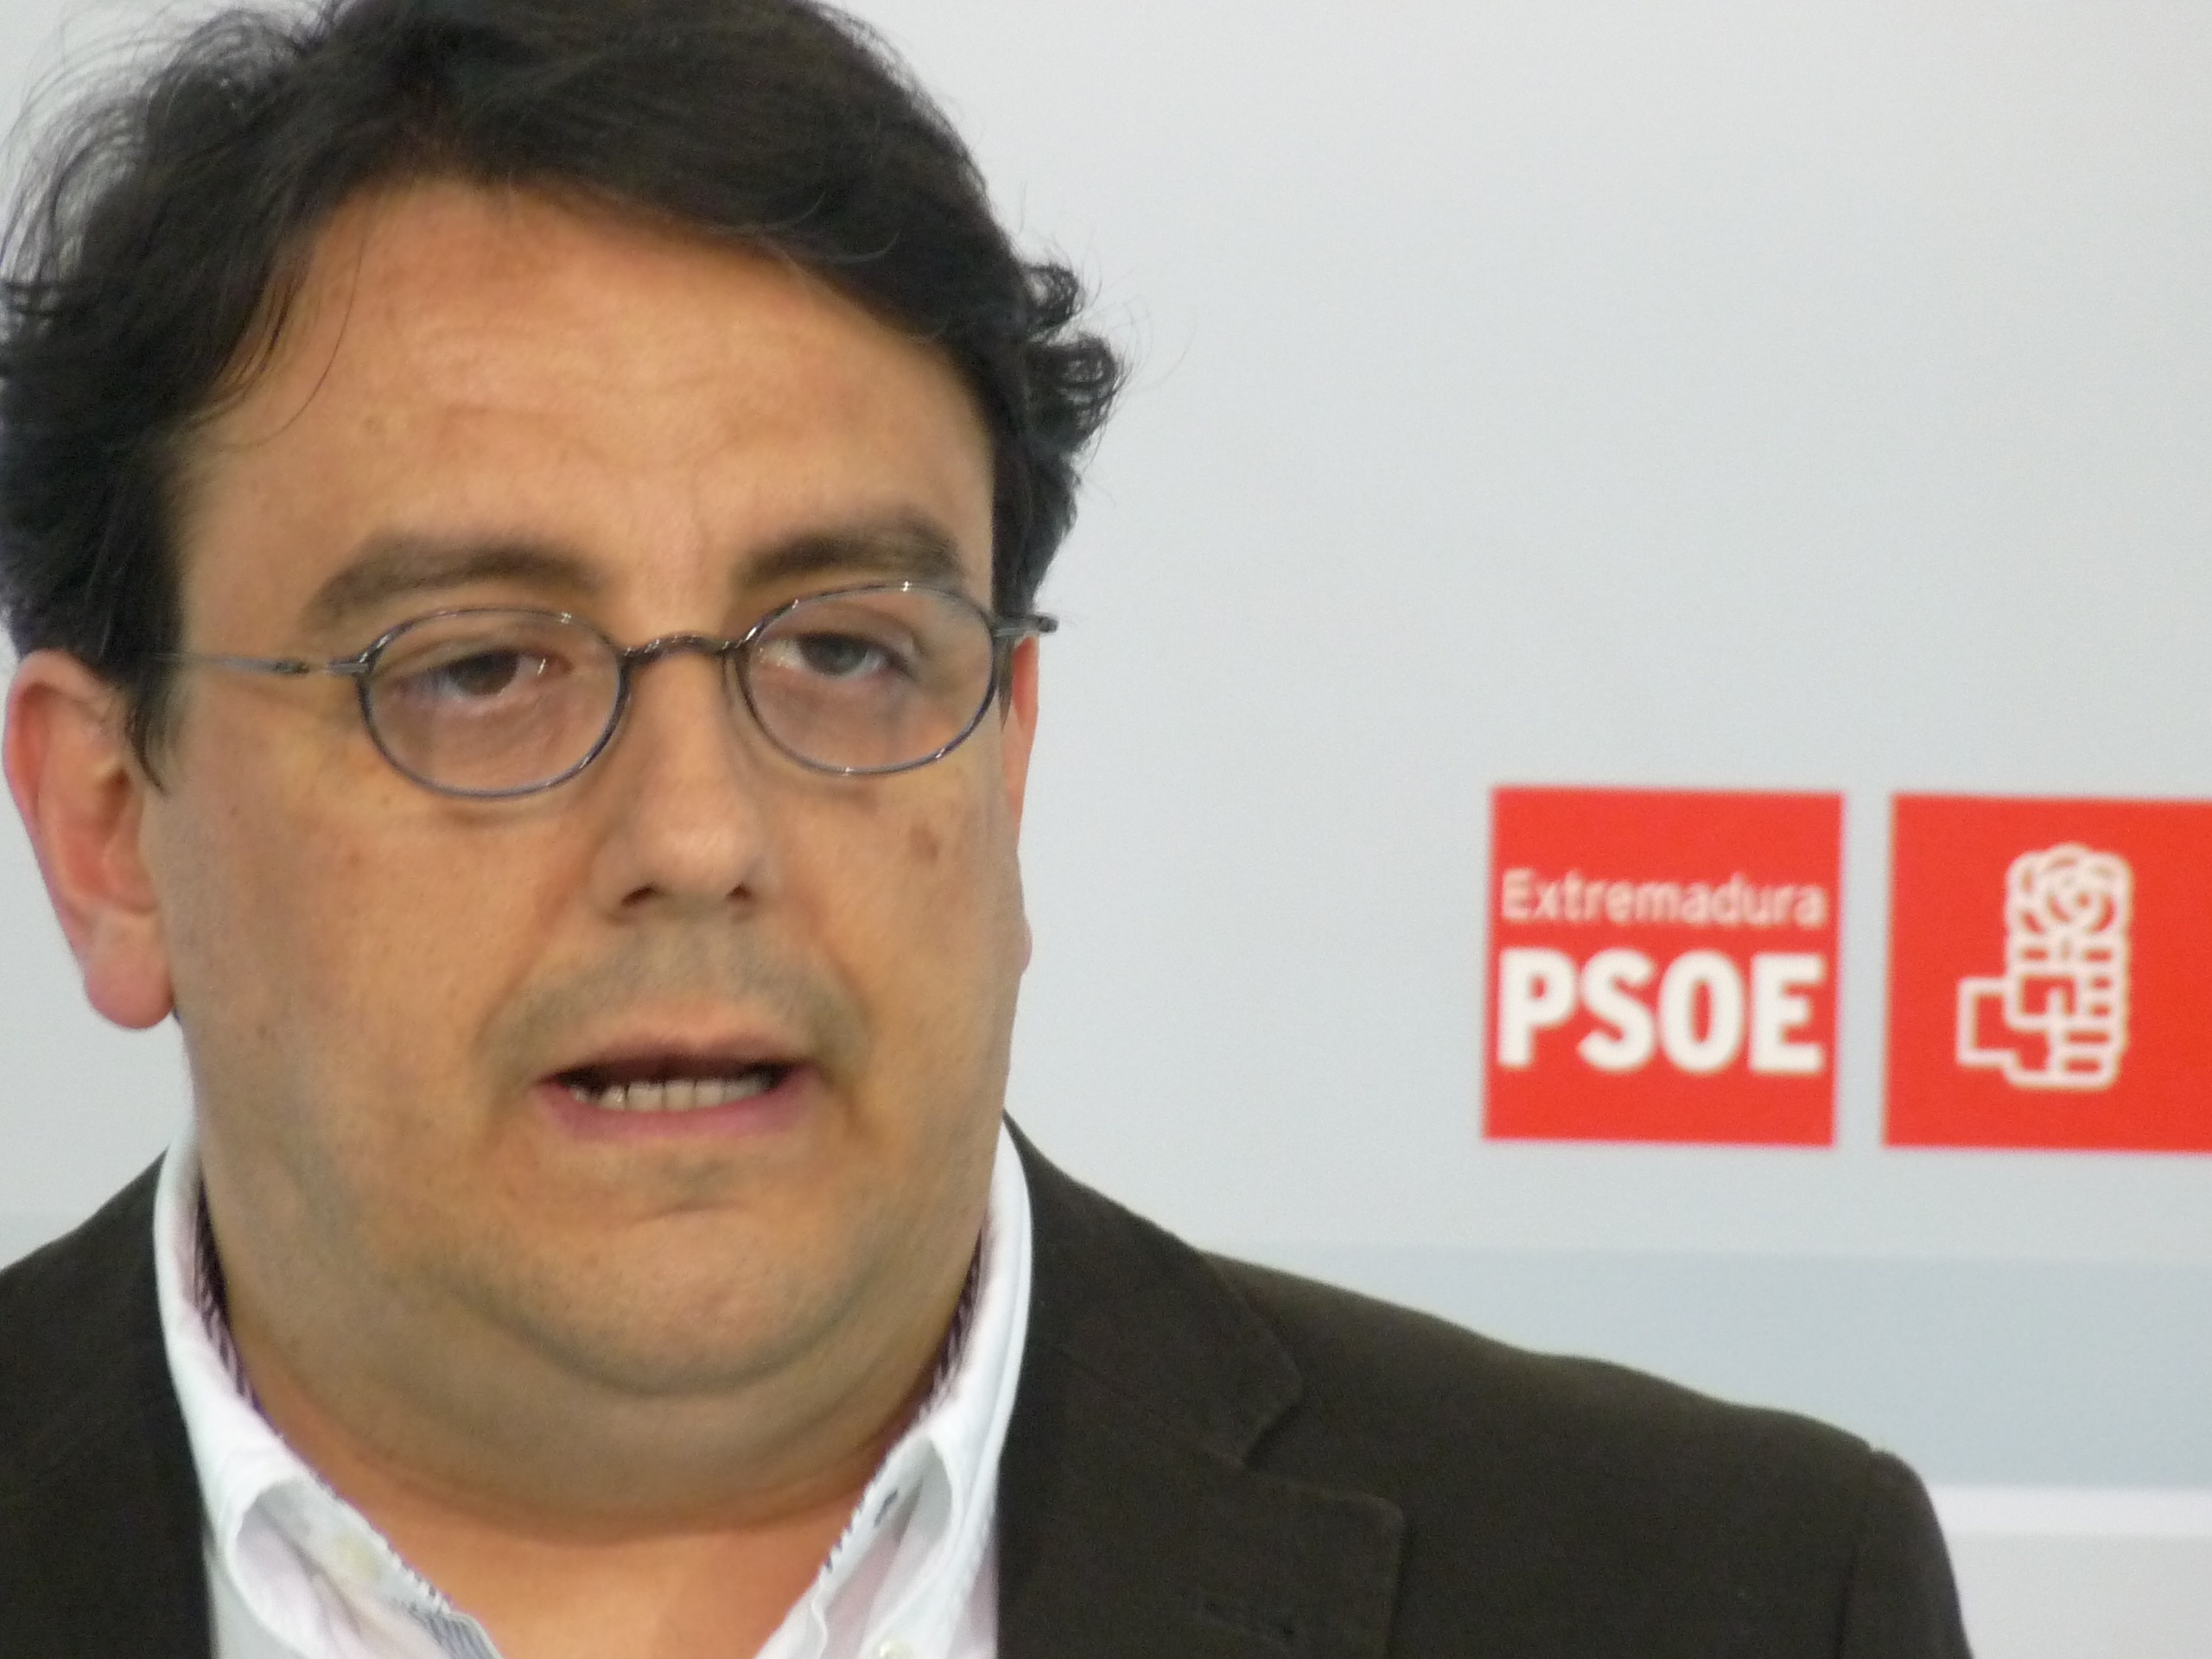 El PSOE calcula que la lista de espera para operaciones quirúrgicas ha crecido entre un 23 y 32% en el primer semestre